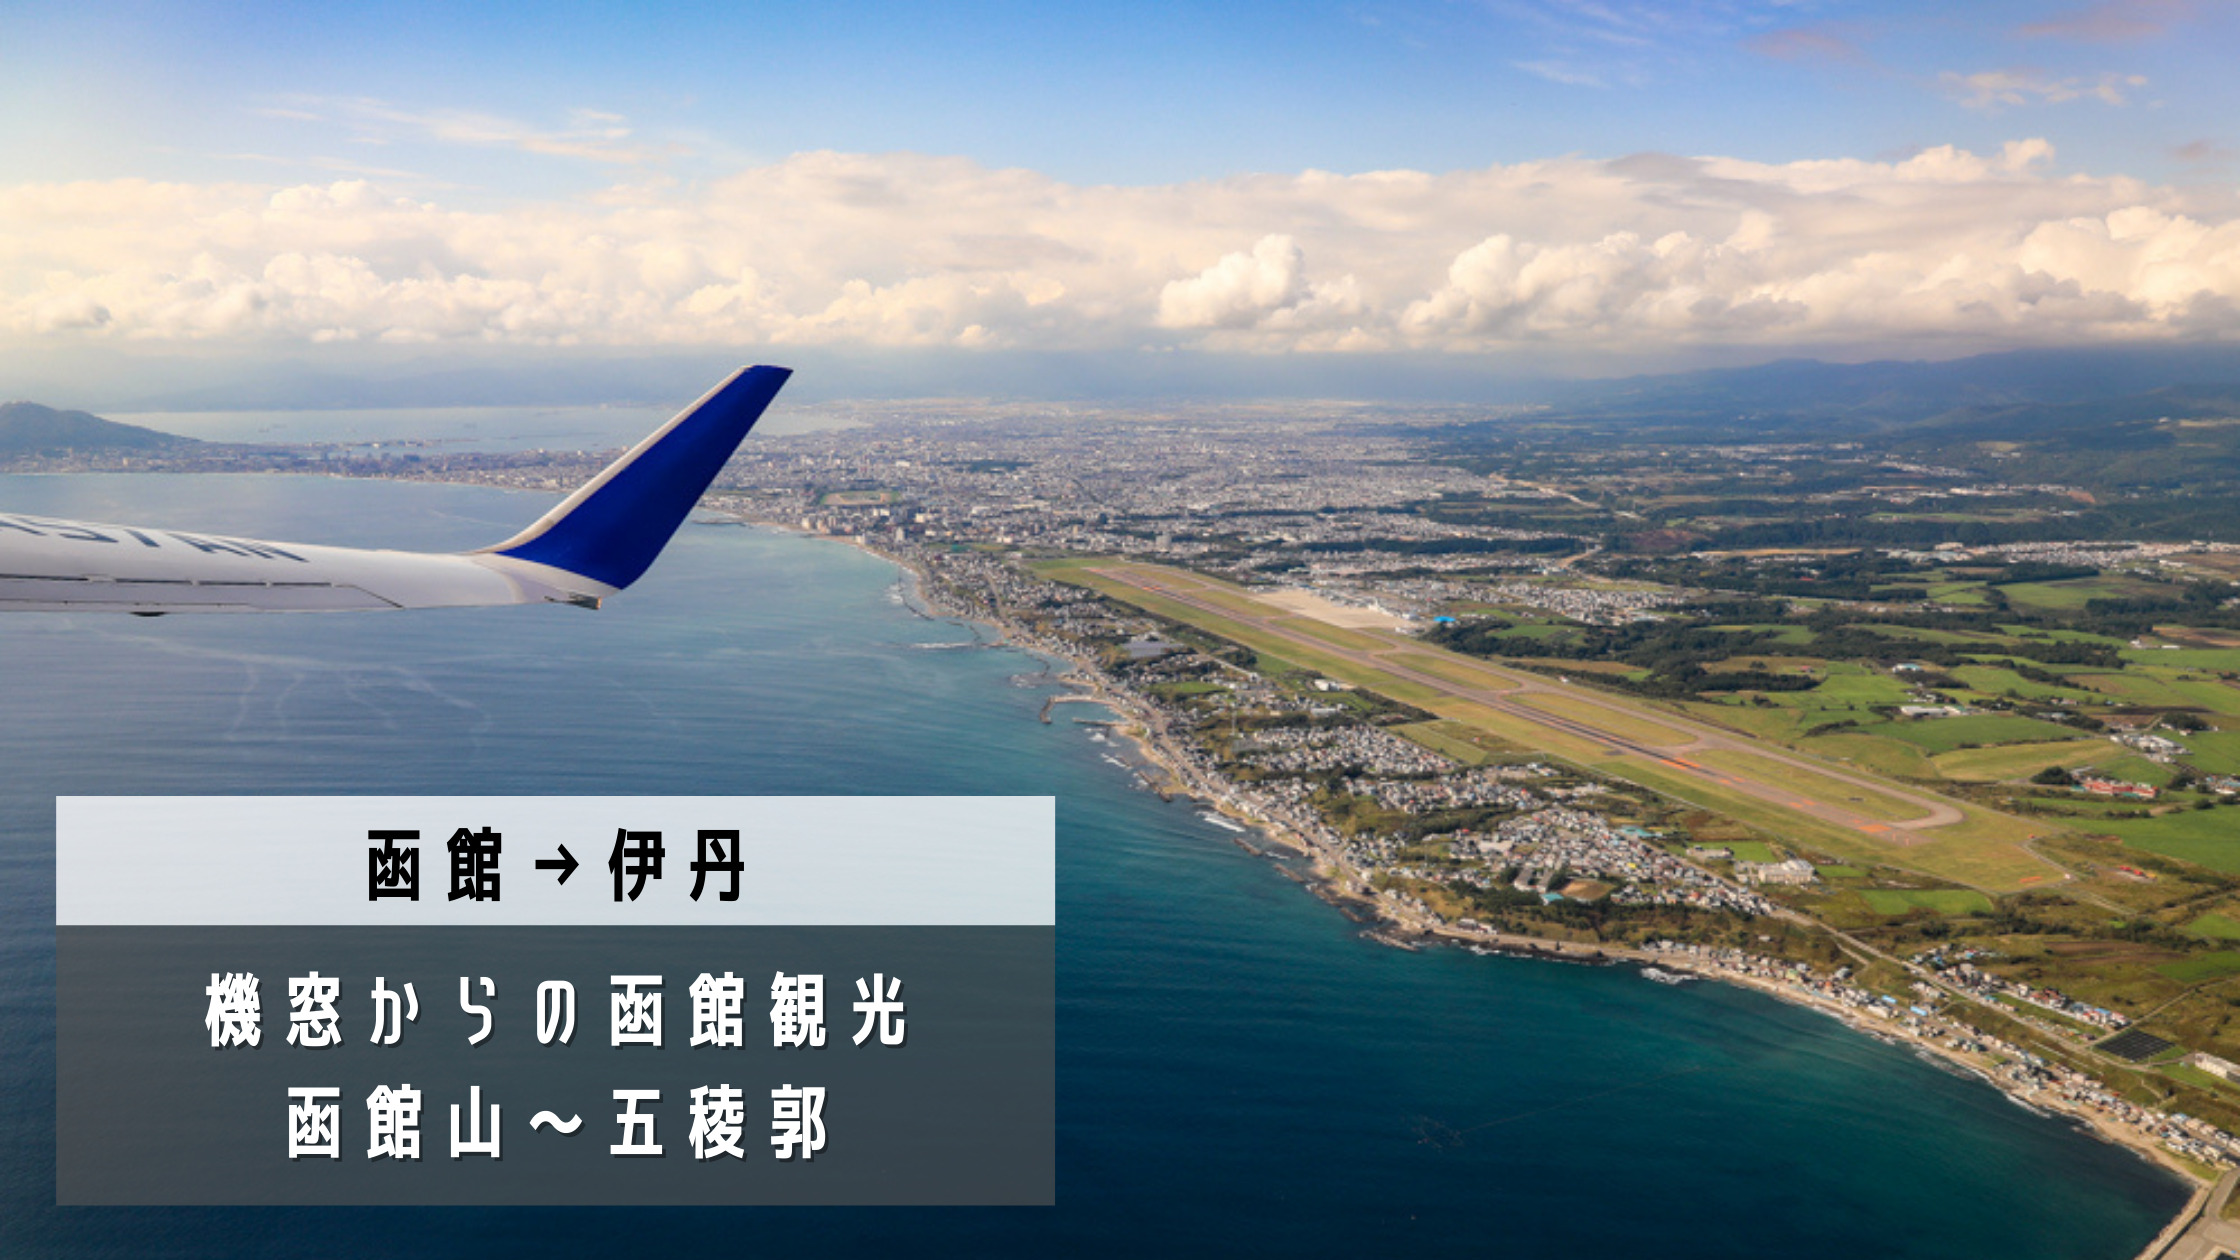 函館 伊丹 飛行機の中でも観光気分 全日本空輸 Ana ボーイング737 800搭乗記 シテイリョウコウ